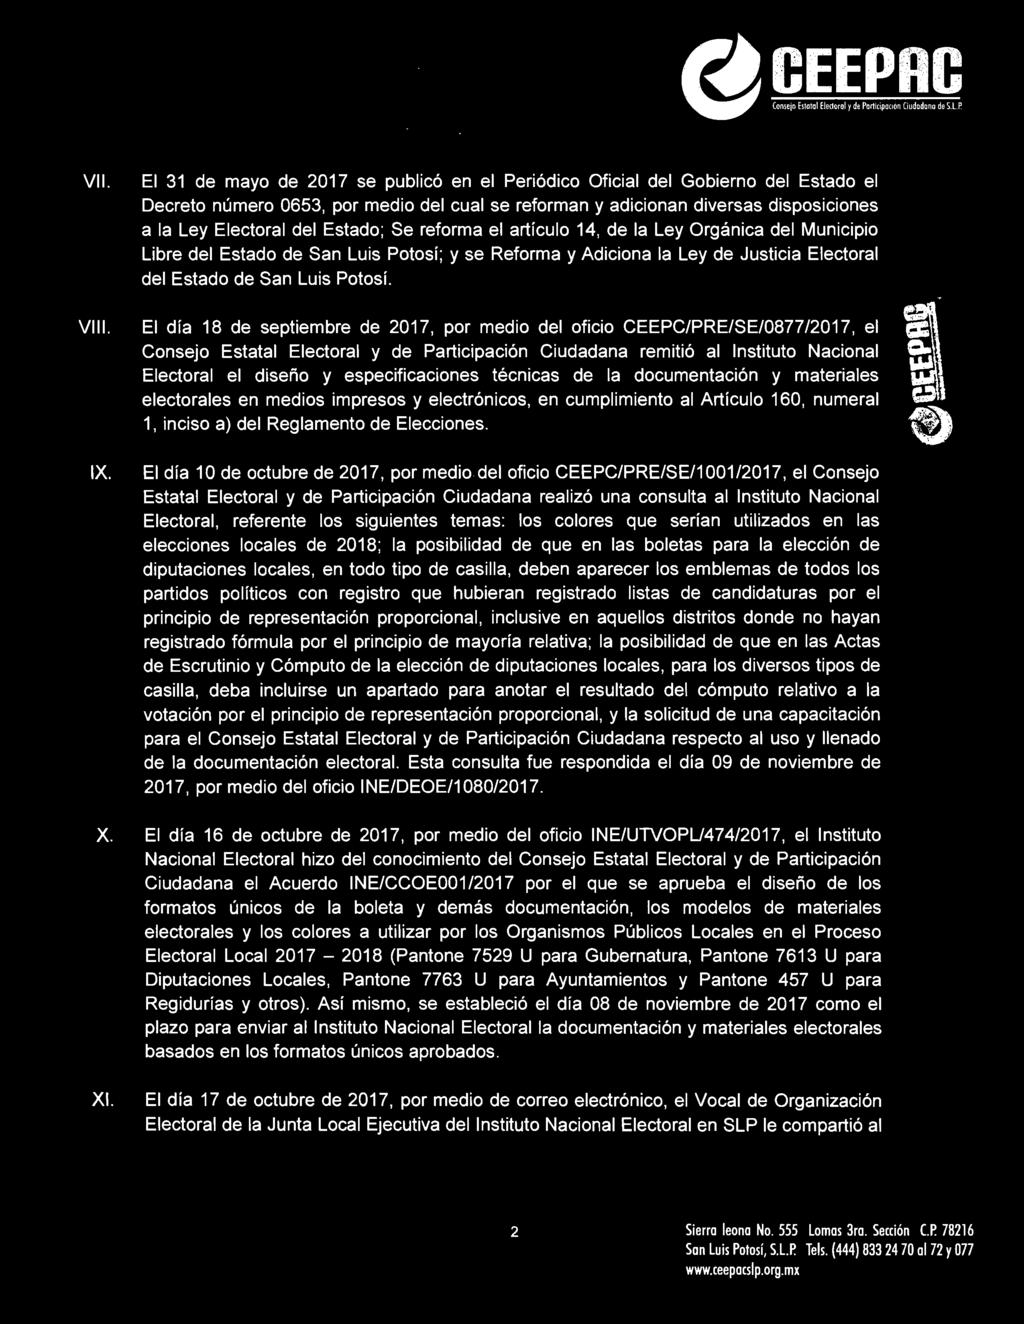 Se reforma el artícu lo 4, de la Ley Orgánica del Municipio Libre del Estado de San Luis Potosí; y se Reforma y Adiciona la Ley de Justicia Electoral del Estado de San Luis Potosí.